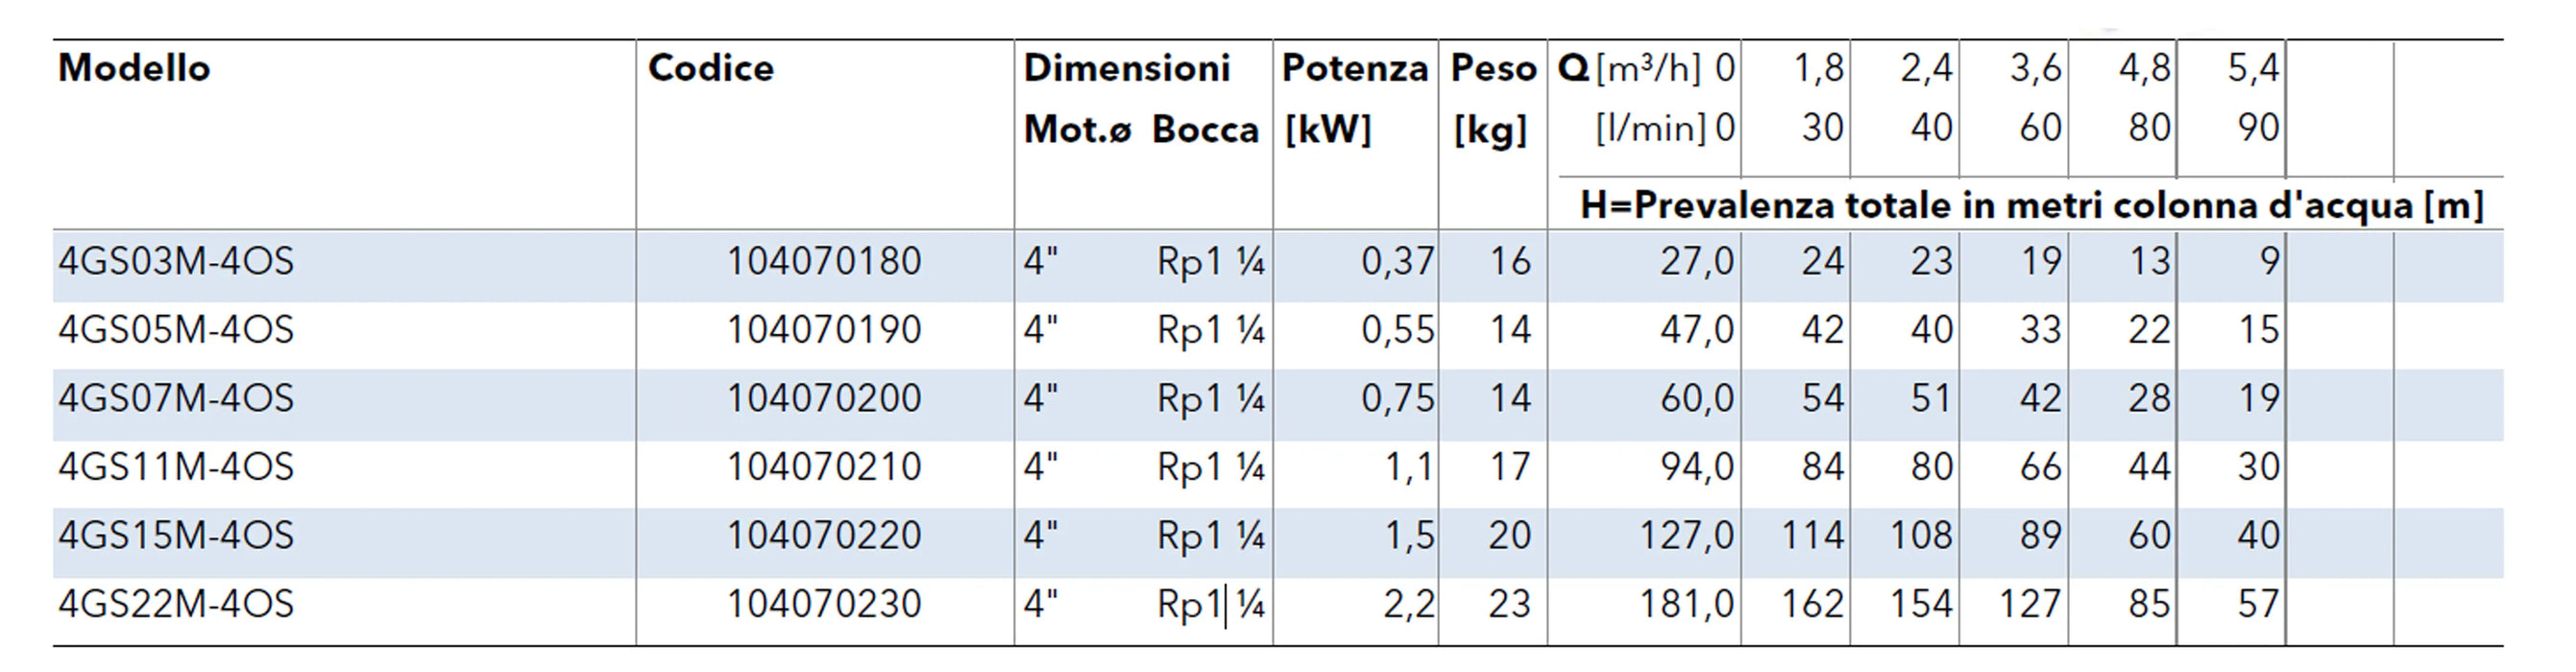 Lowara - Elettropompa Sommersa 4 GS 2 HP 220V In Acciaio Inox Per Pozzo - Articolo: 104070220